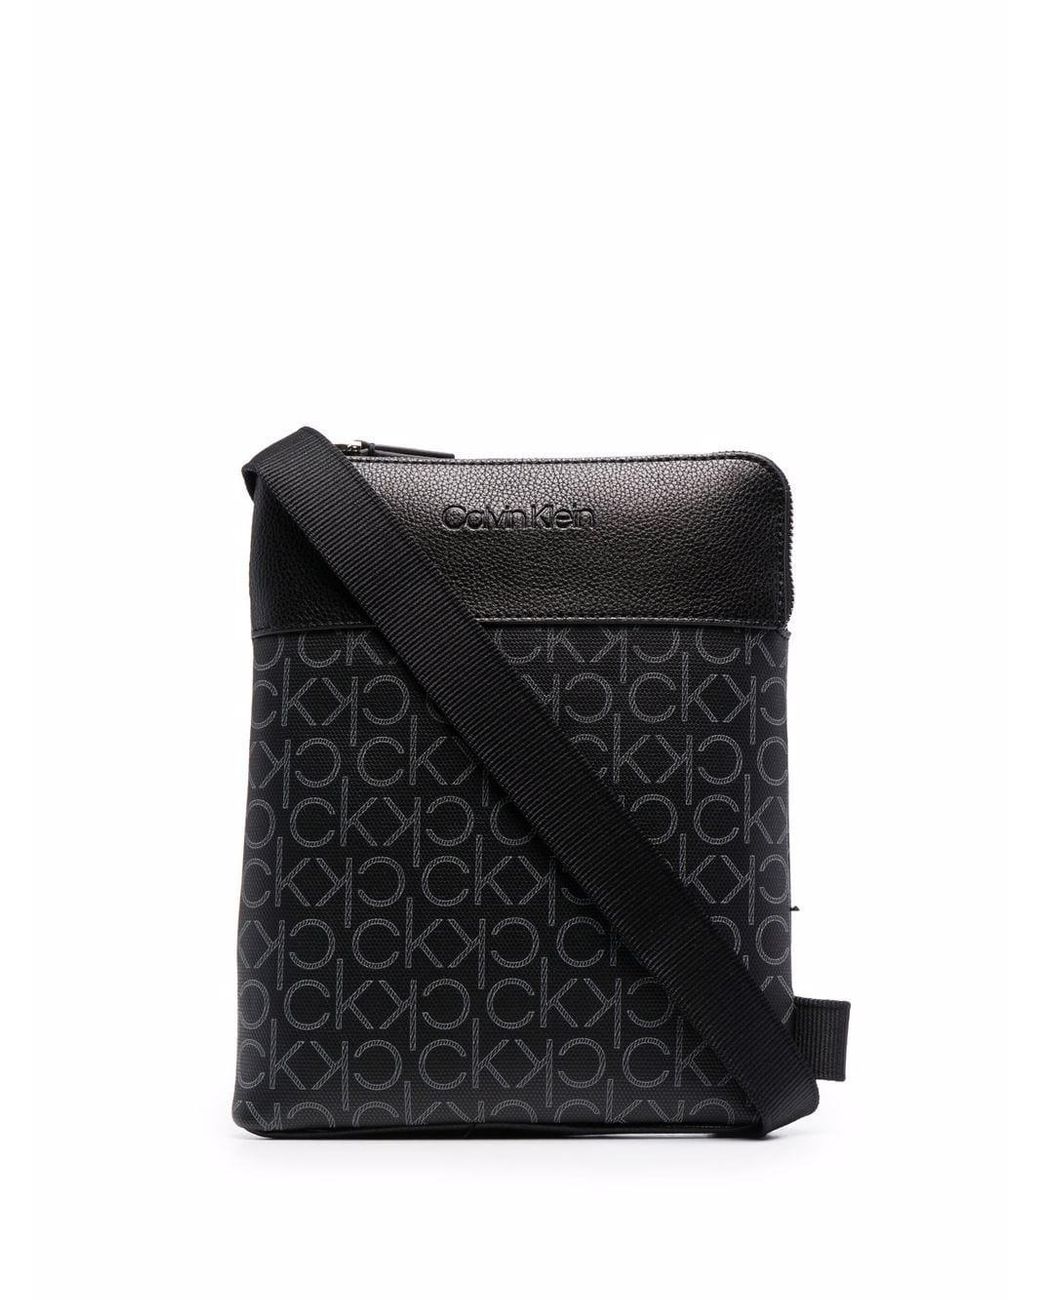 Calvin Klein Embossed Monogram-Pattern Crossbody Bag - Black for Women